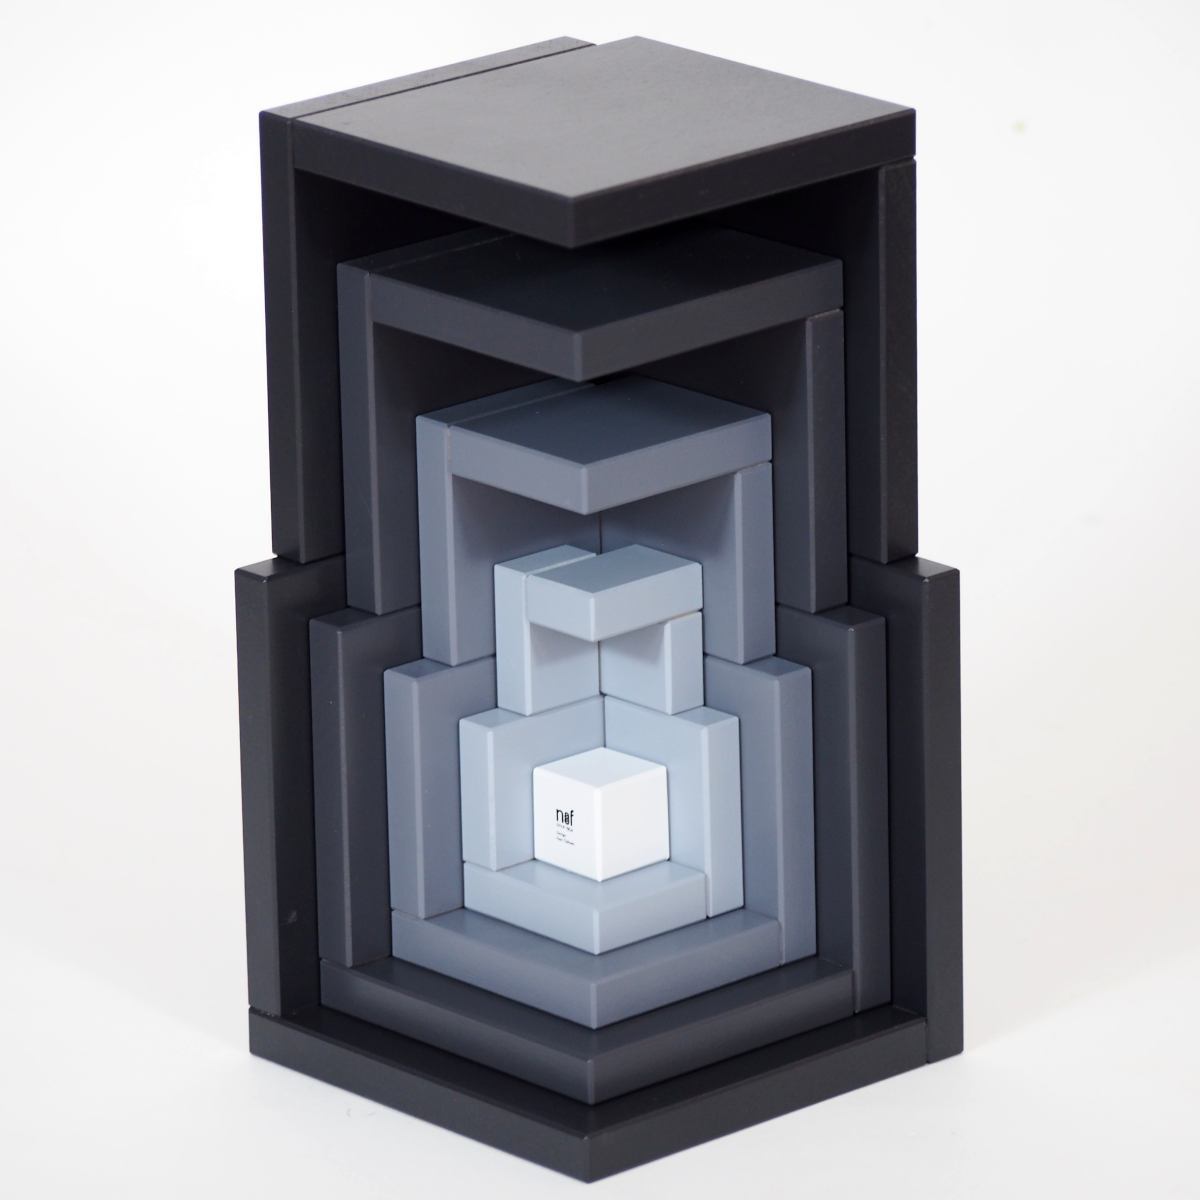 Cella (Grau) – Originales Naef-Spiel aus Holz für kreative Konstruktionen